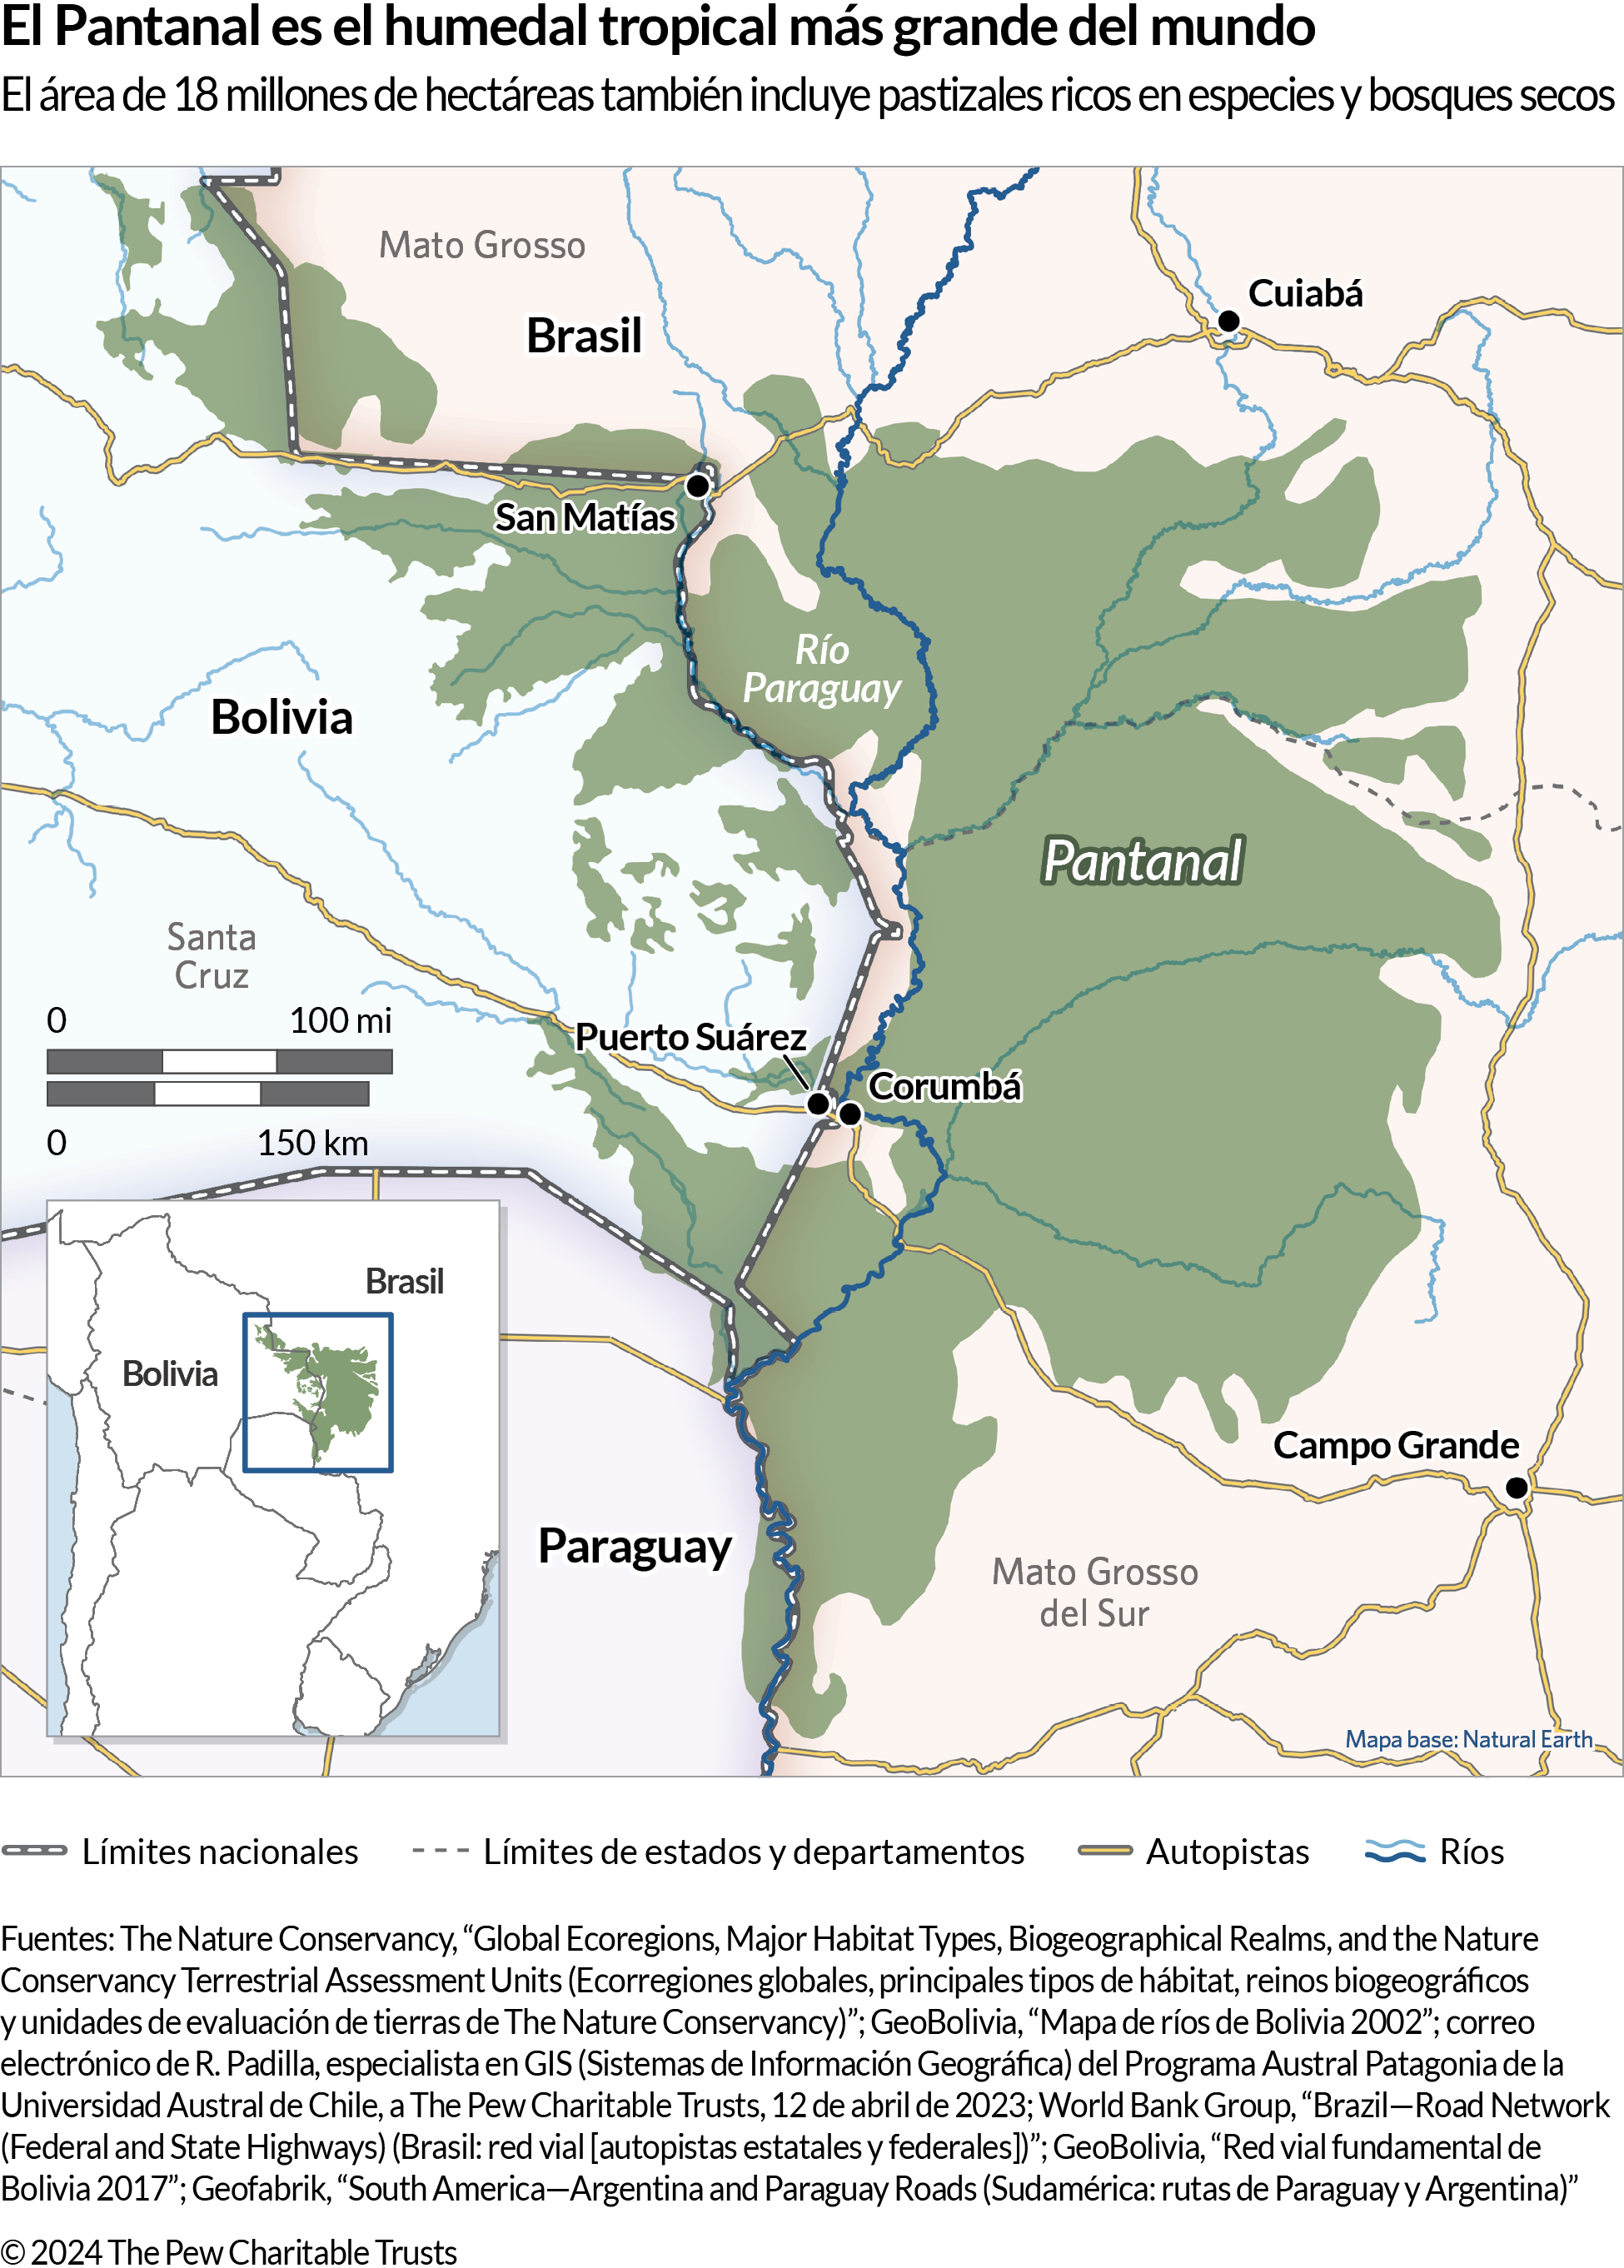 Un mapa que muestra una parte de Sudamérica donde convergen las fronteras de Bolivia, Brasil y Paraguay, incluida un área sombreada en verde oscuro denominada “Pantanal”. El mapa también identifica la ubicación de algunos ríos, autopistas, ciudades, estados y departamentos. 